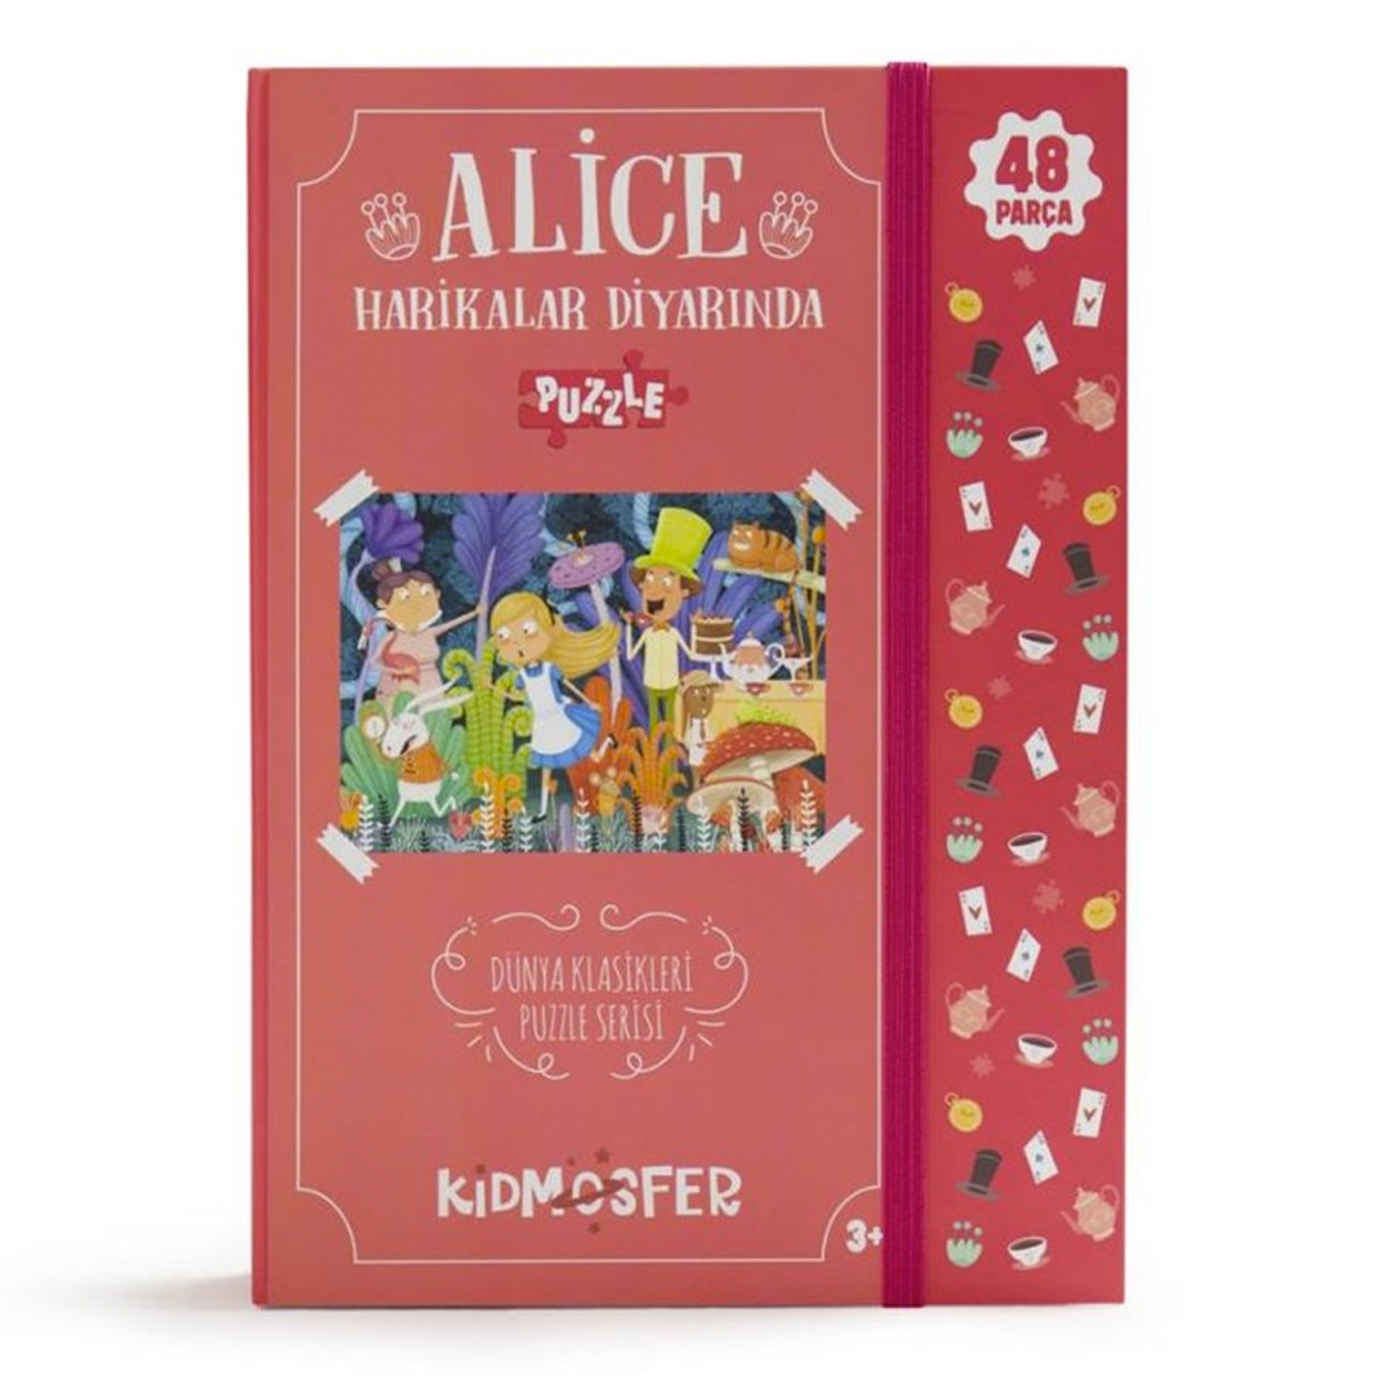  Alice Harikalar Diyarında Puzzle 48 Parça